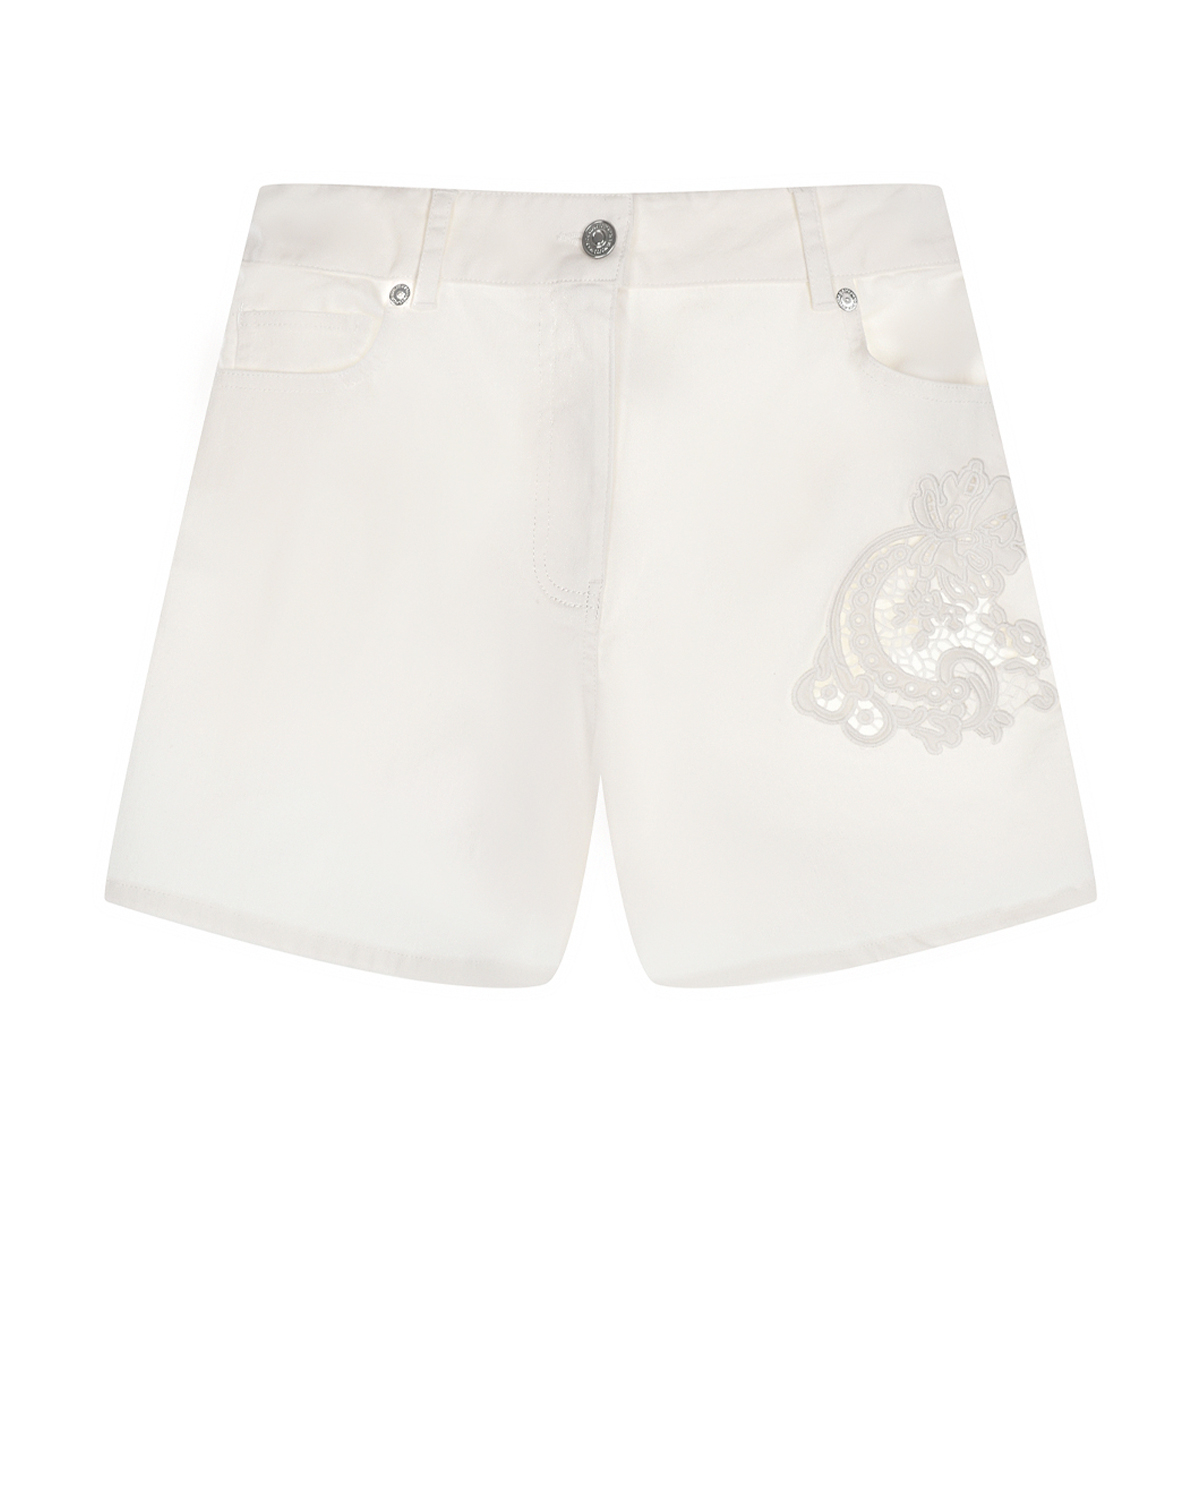 Белые джинсовые шорты с ажурной вышивкой Ermanno Scervino шорты джинсовые белые для девочки button blue 140